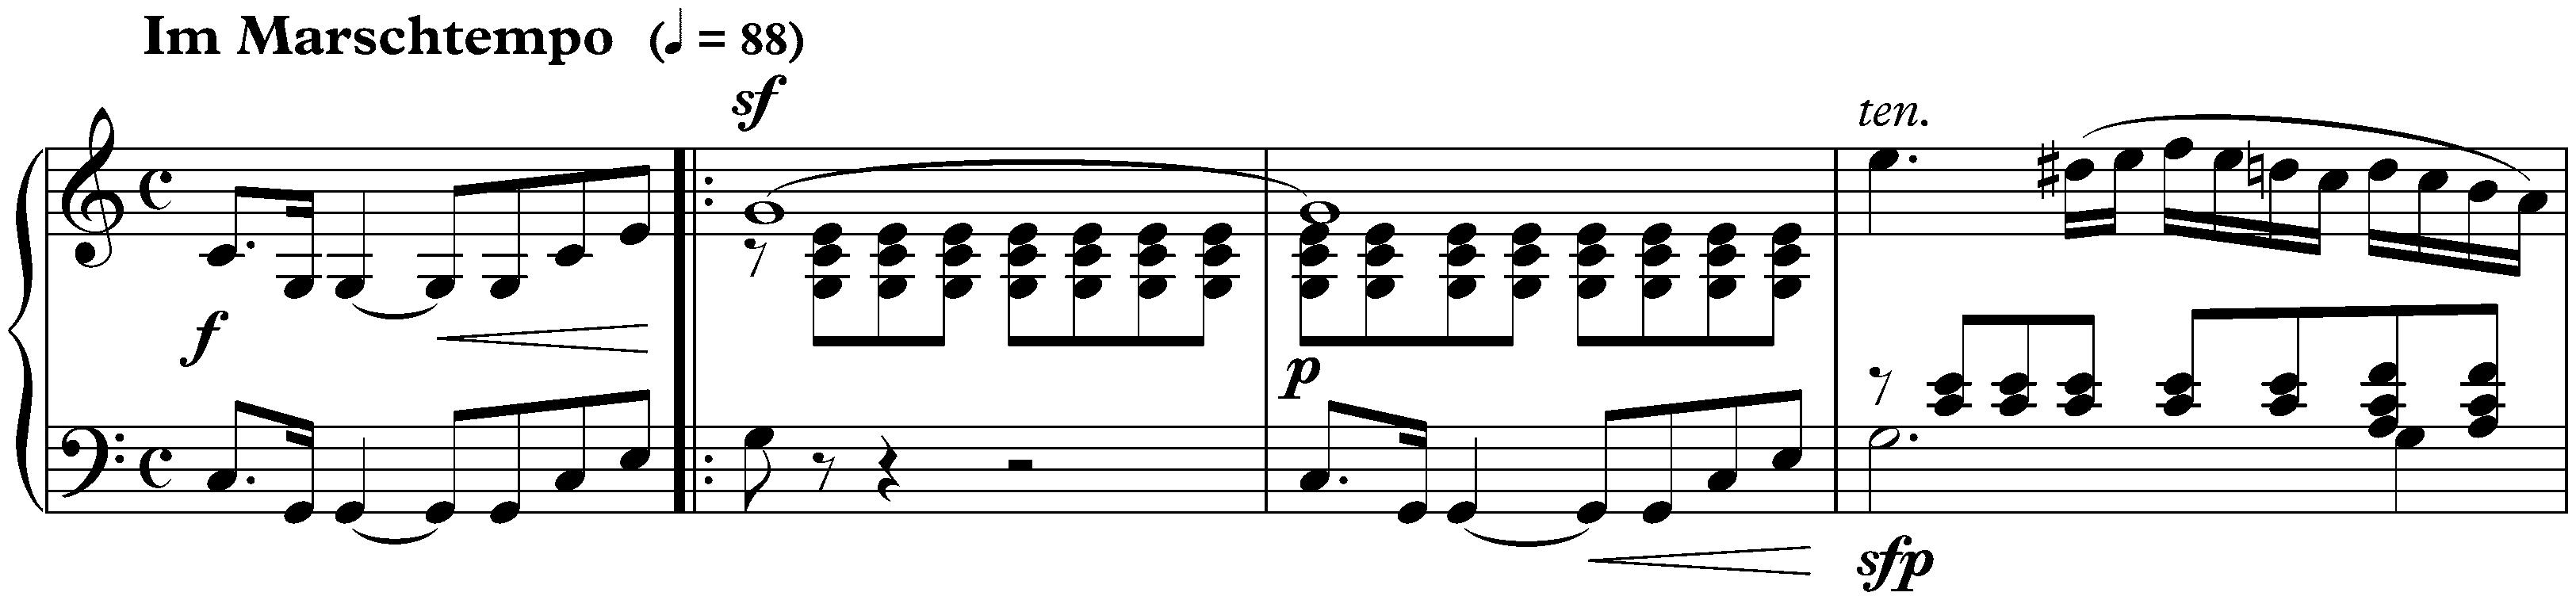 Sonate für die Jugend in C major, op. 118 no. 3; 1. Im Marschtempo